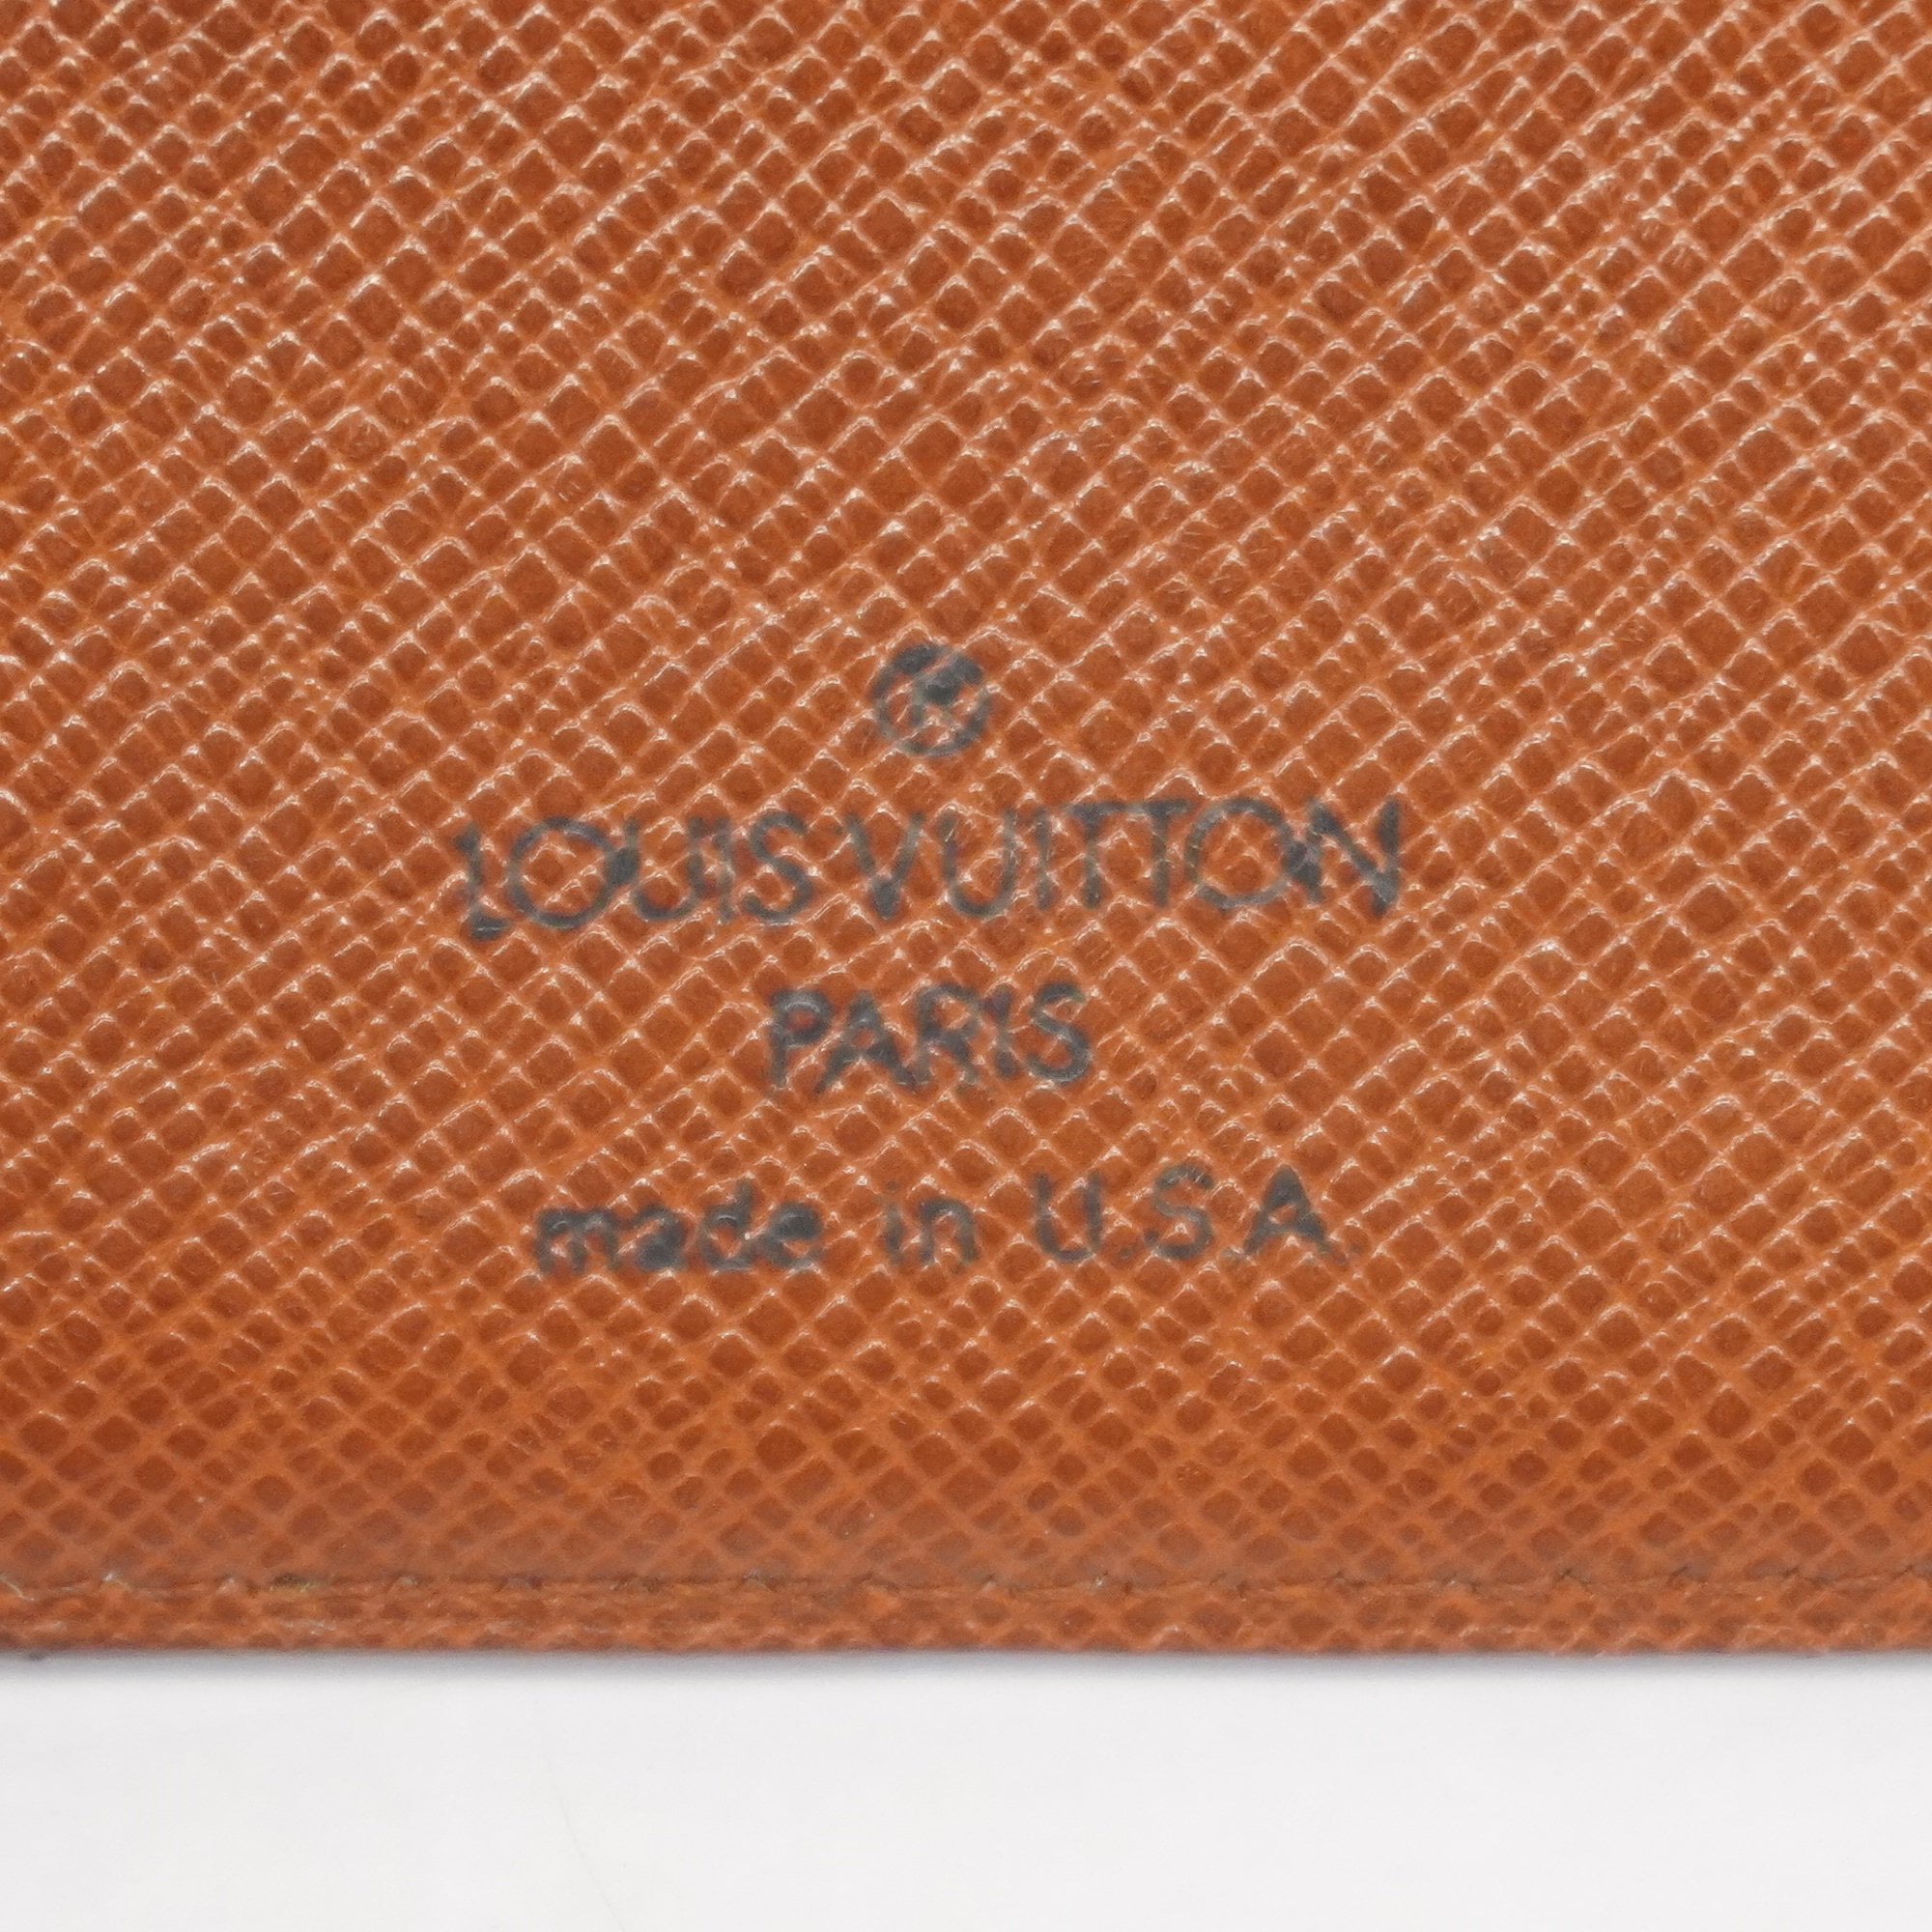 LOUIS VUITTON Tri-fold wallet M61652 Porto Monet Vie Cult Credit